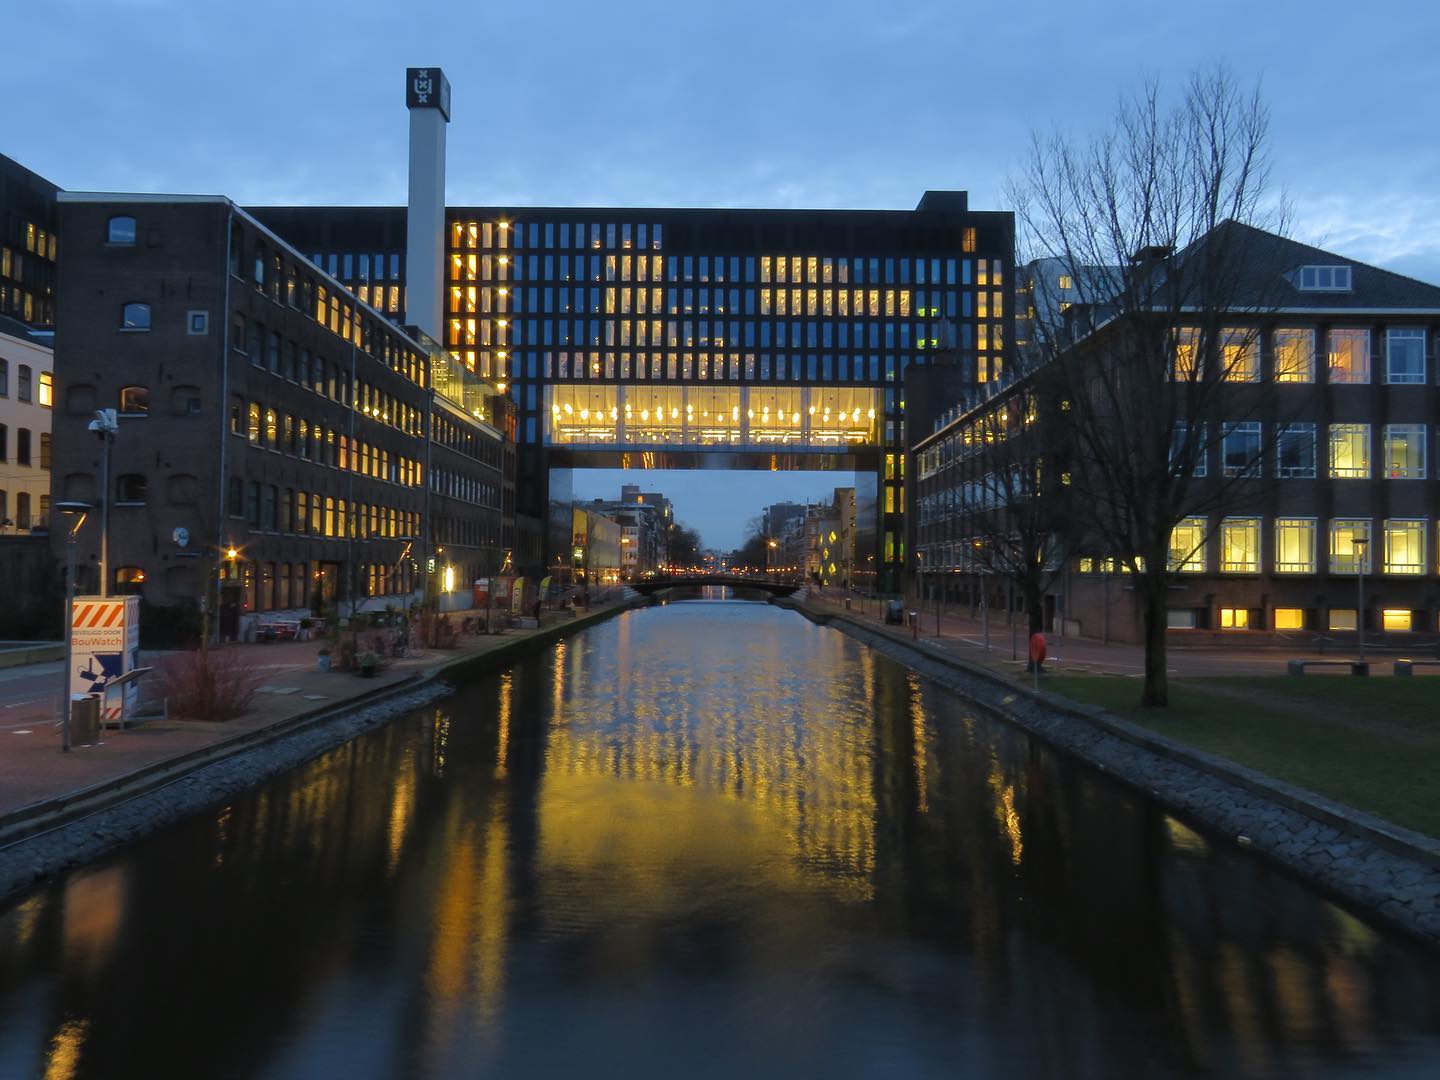 amsterdam university campus tour